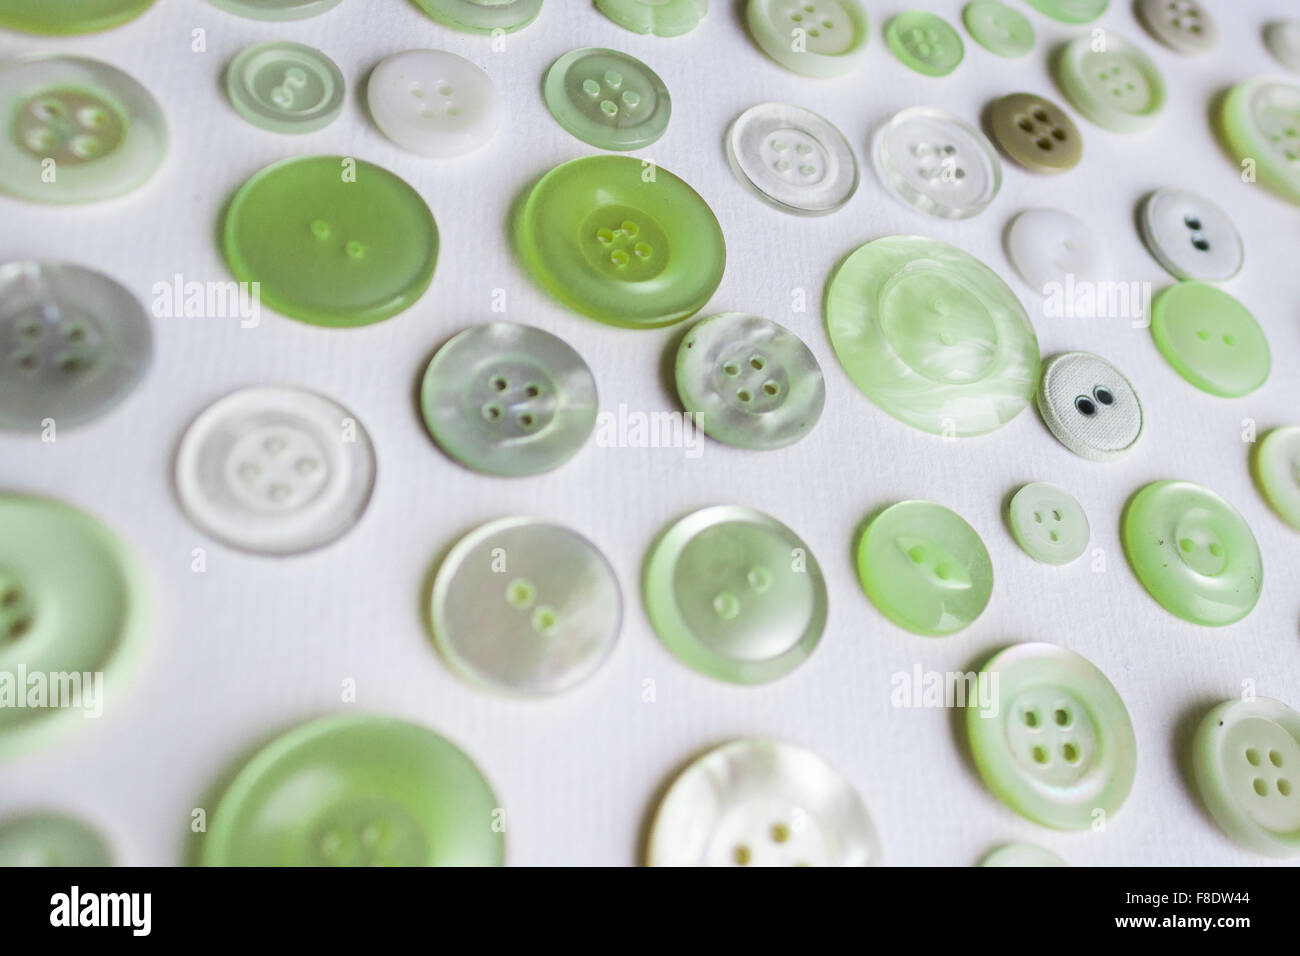 Botones verdes sobre fondo blanco - grupo de colores Foto de stock